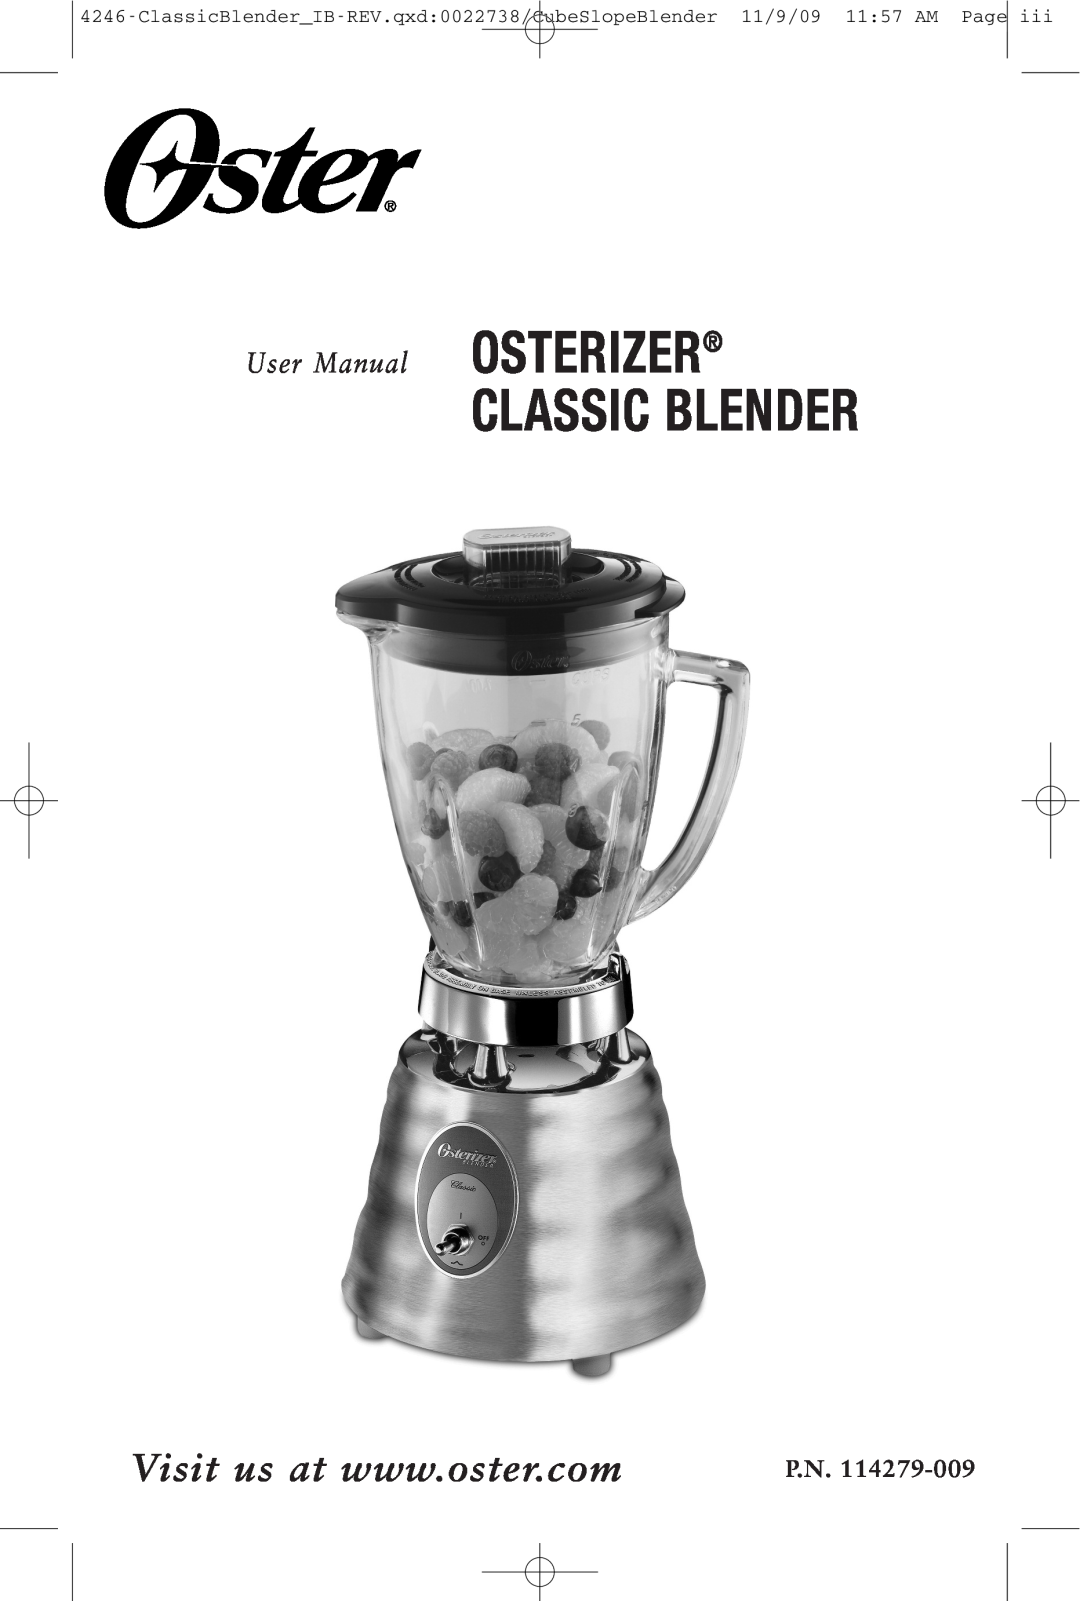 Oster 114279-009 manual Classic Blender, P.N, User Manua l OSTERIZER 